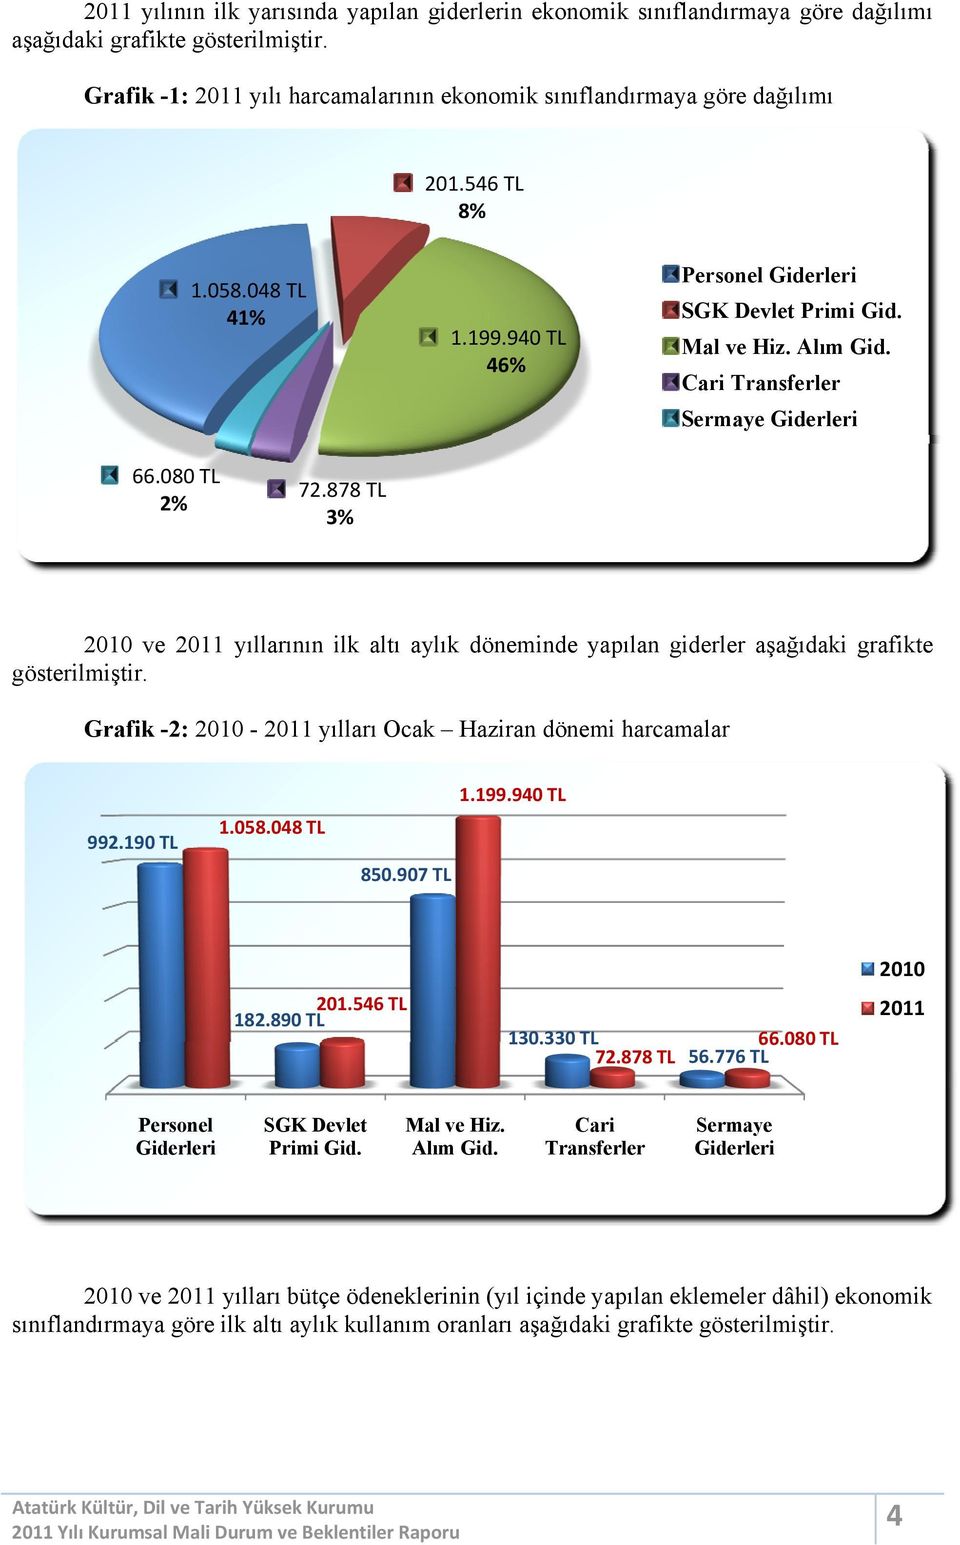 878TL 3% 2010 ve 2011 yıllarının ilk altı aylık döneminde yapılan giderler aşağıdaki grafikte gösterilmiştir. Grafik -2: 2010-2011 yılları Ocak dönemi harcamalar 1.199.940TL 992.190TL 1.058.048TL 850.